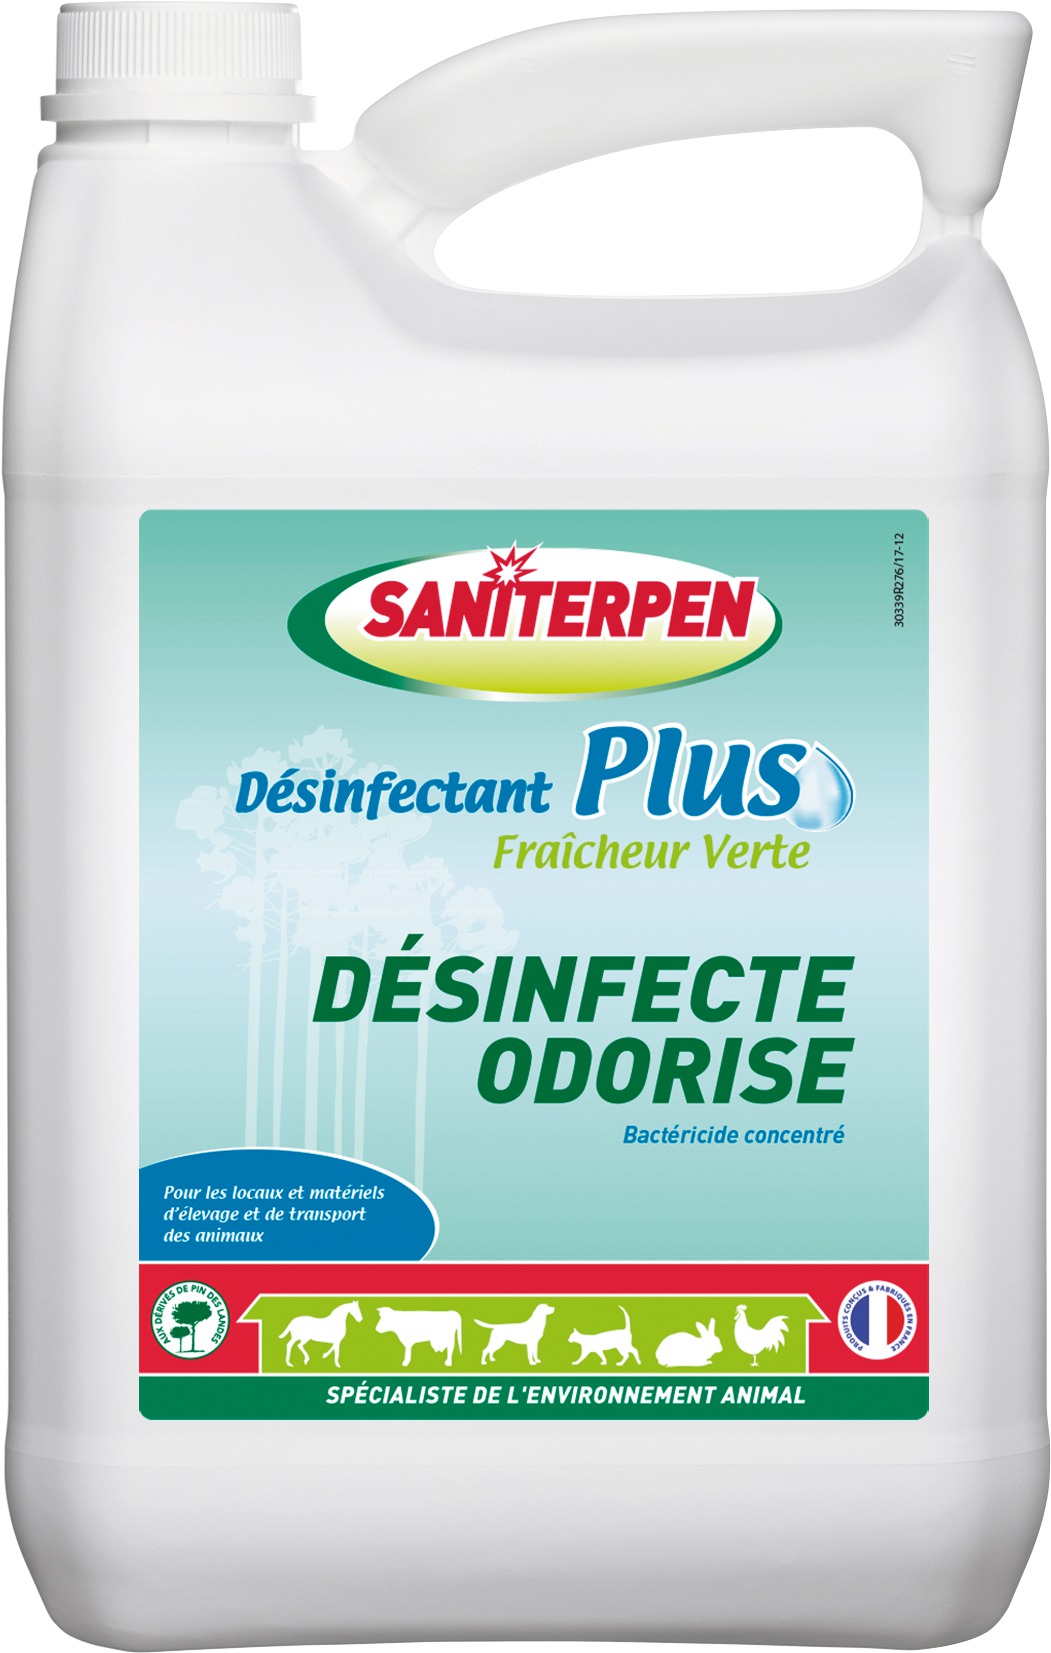 Saniterpen Désinfectant Plus Fraîcheur Verte - Bidon 5l